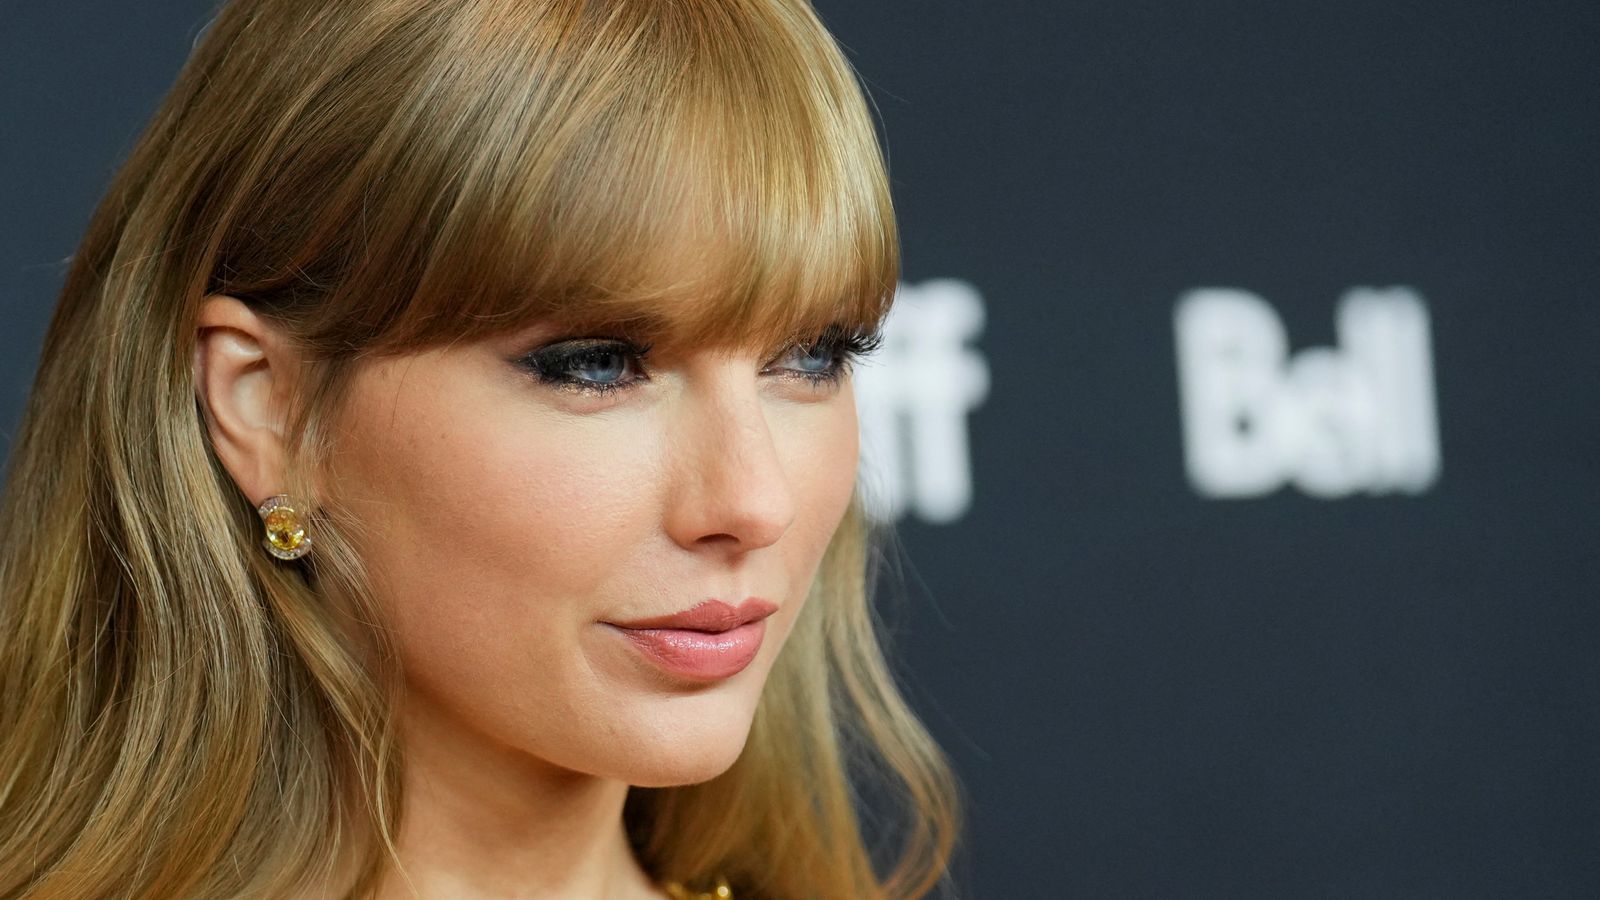 Album baru Taylor Swift ‘Midnights’ pecahkan rekor di Spotify |  Berita Ent & Seni